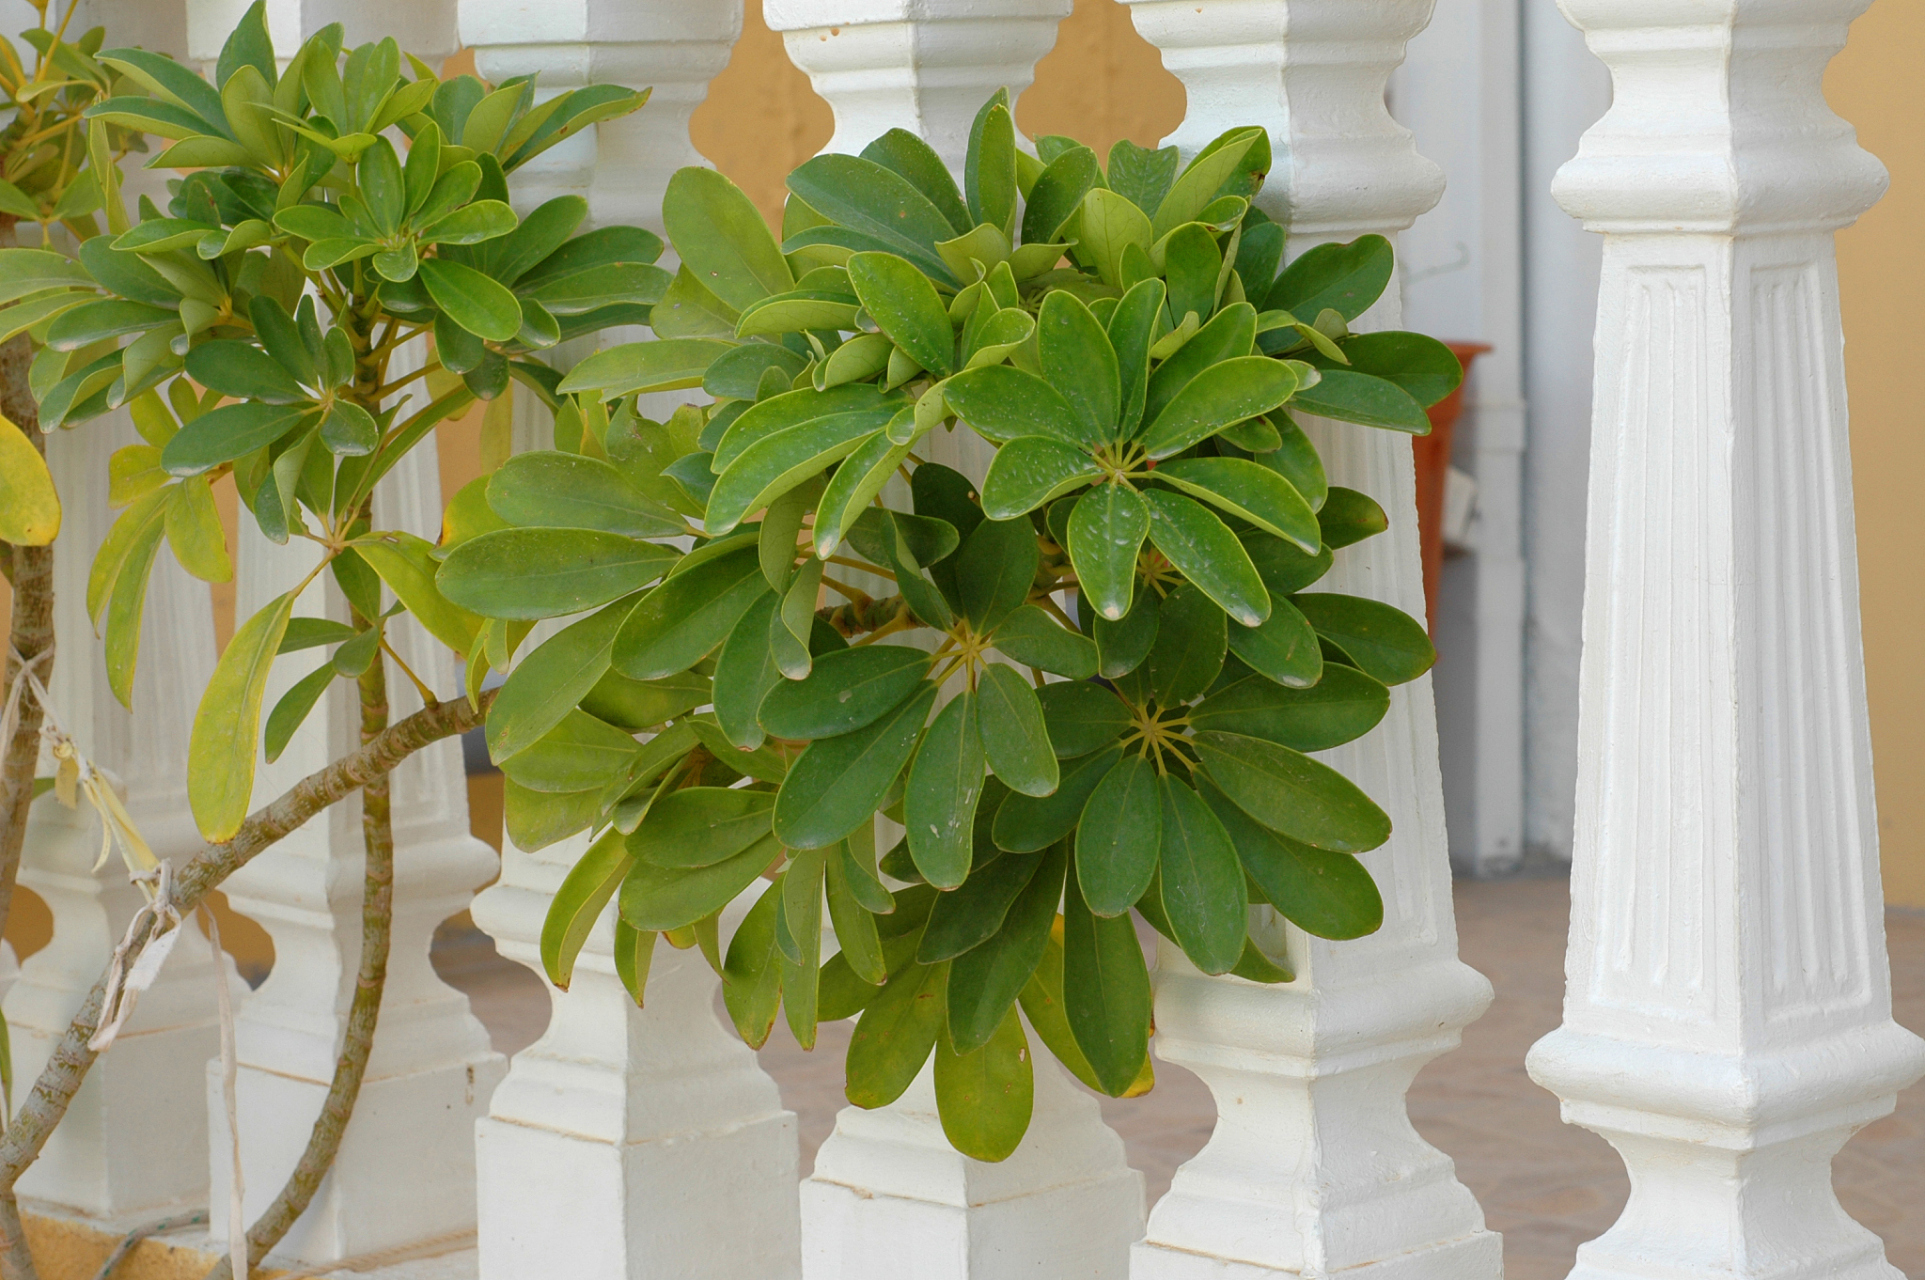 鹅掌柴,是一种常见的室内植物,也被称为鸭掌木,大叶伞,鸭掌木等